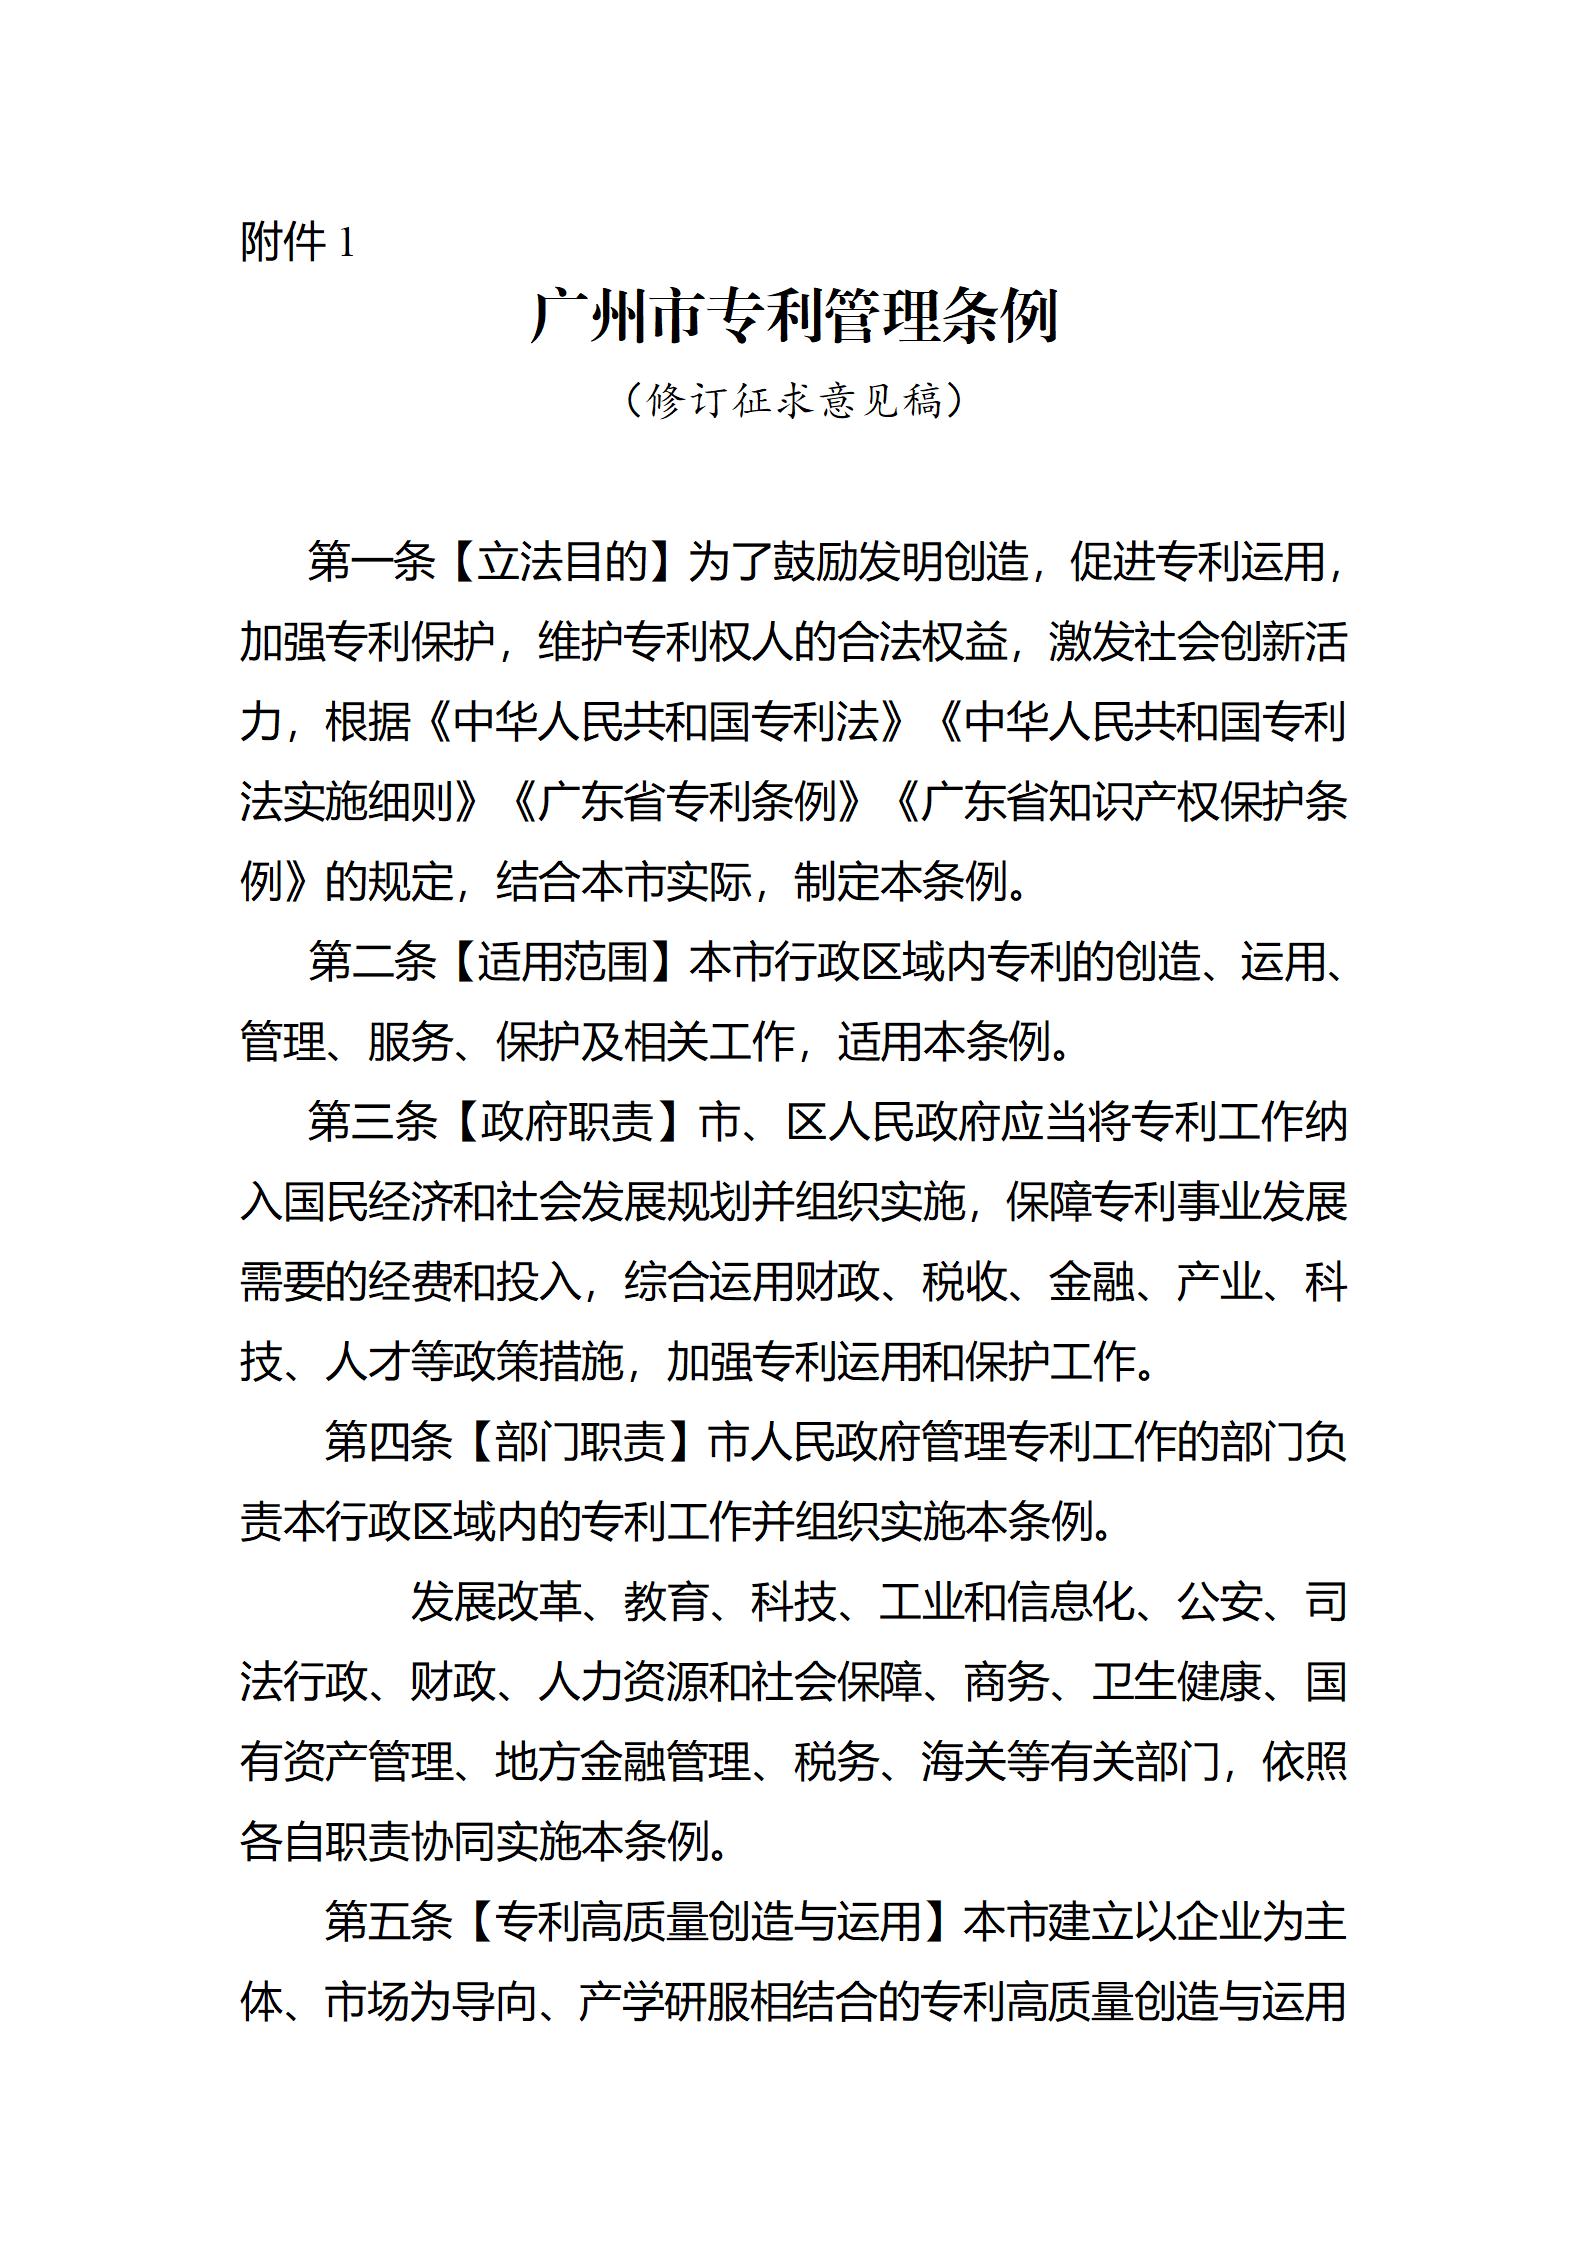 征求意见！《广州市专利管理条例（修订征求意见稿）》